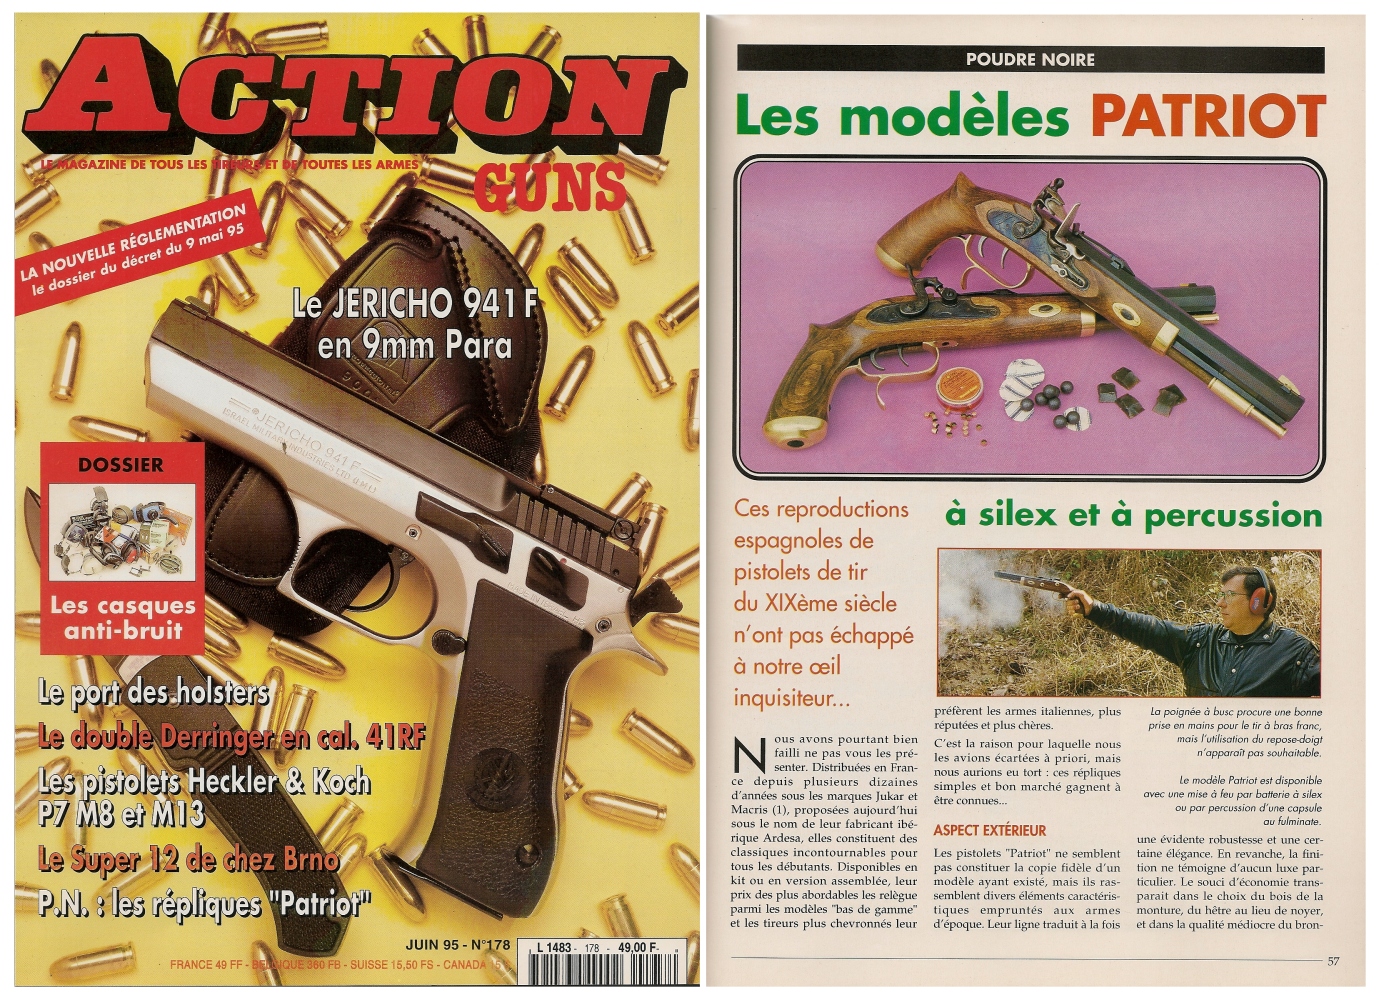 Le banc d'essai des pistolets « Patriot » à silex et à percussion a été publié sur 5 pages dans le magazine Action Guns n° 178 (juin 1995).